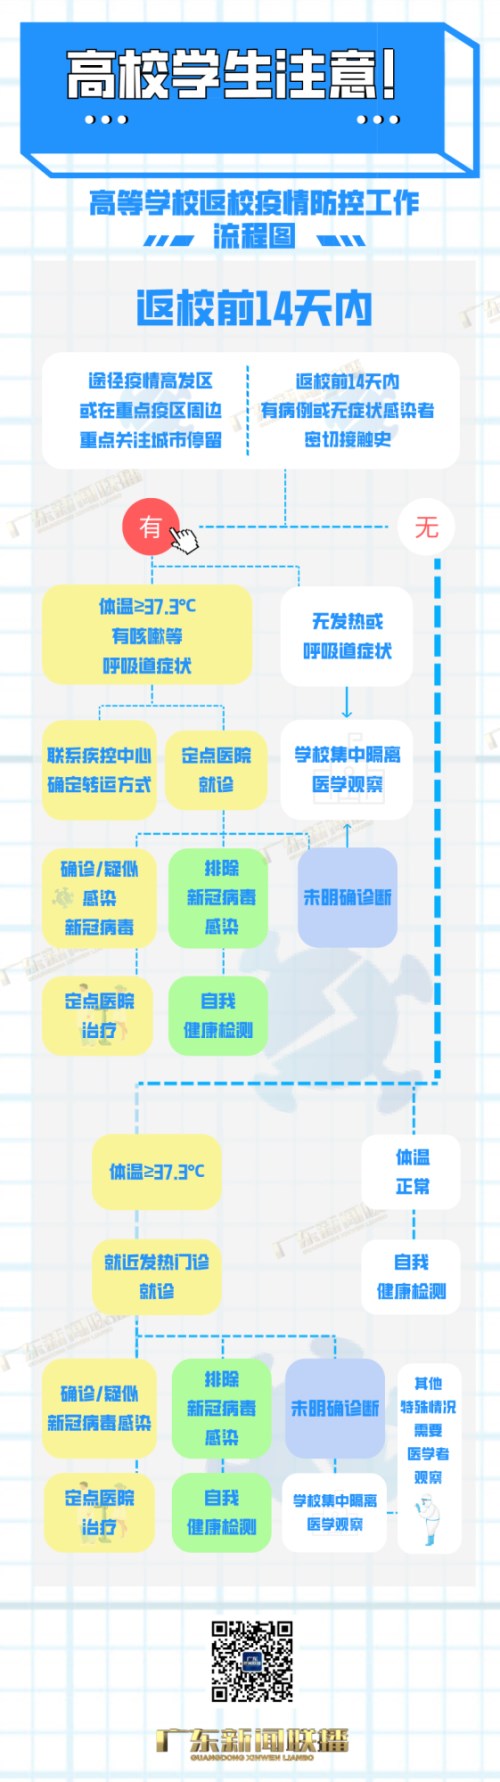 2021年秋季开学将至 广东省新冠肺炎疫情防控指挥办发布开学防疫指南